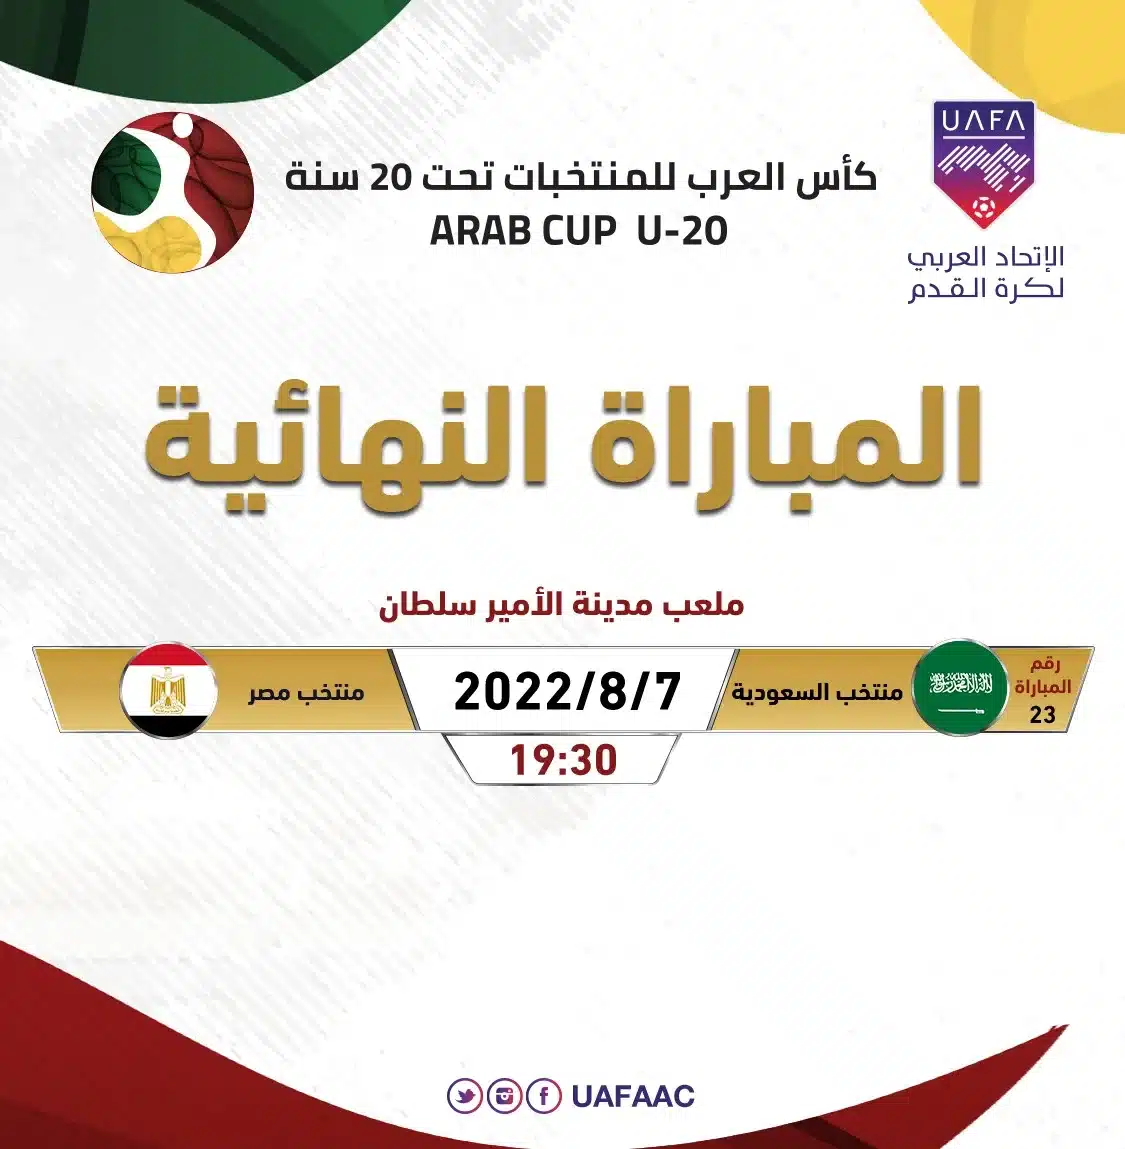 رابط حجز تذاكر مباراة السعودية ومصر نهائي كأس العرب للشباب 2022 عبر تكت مكس